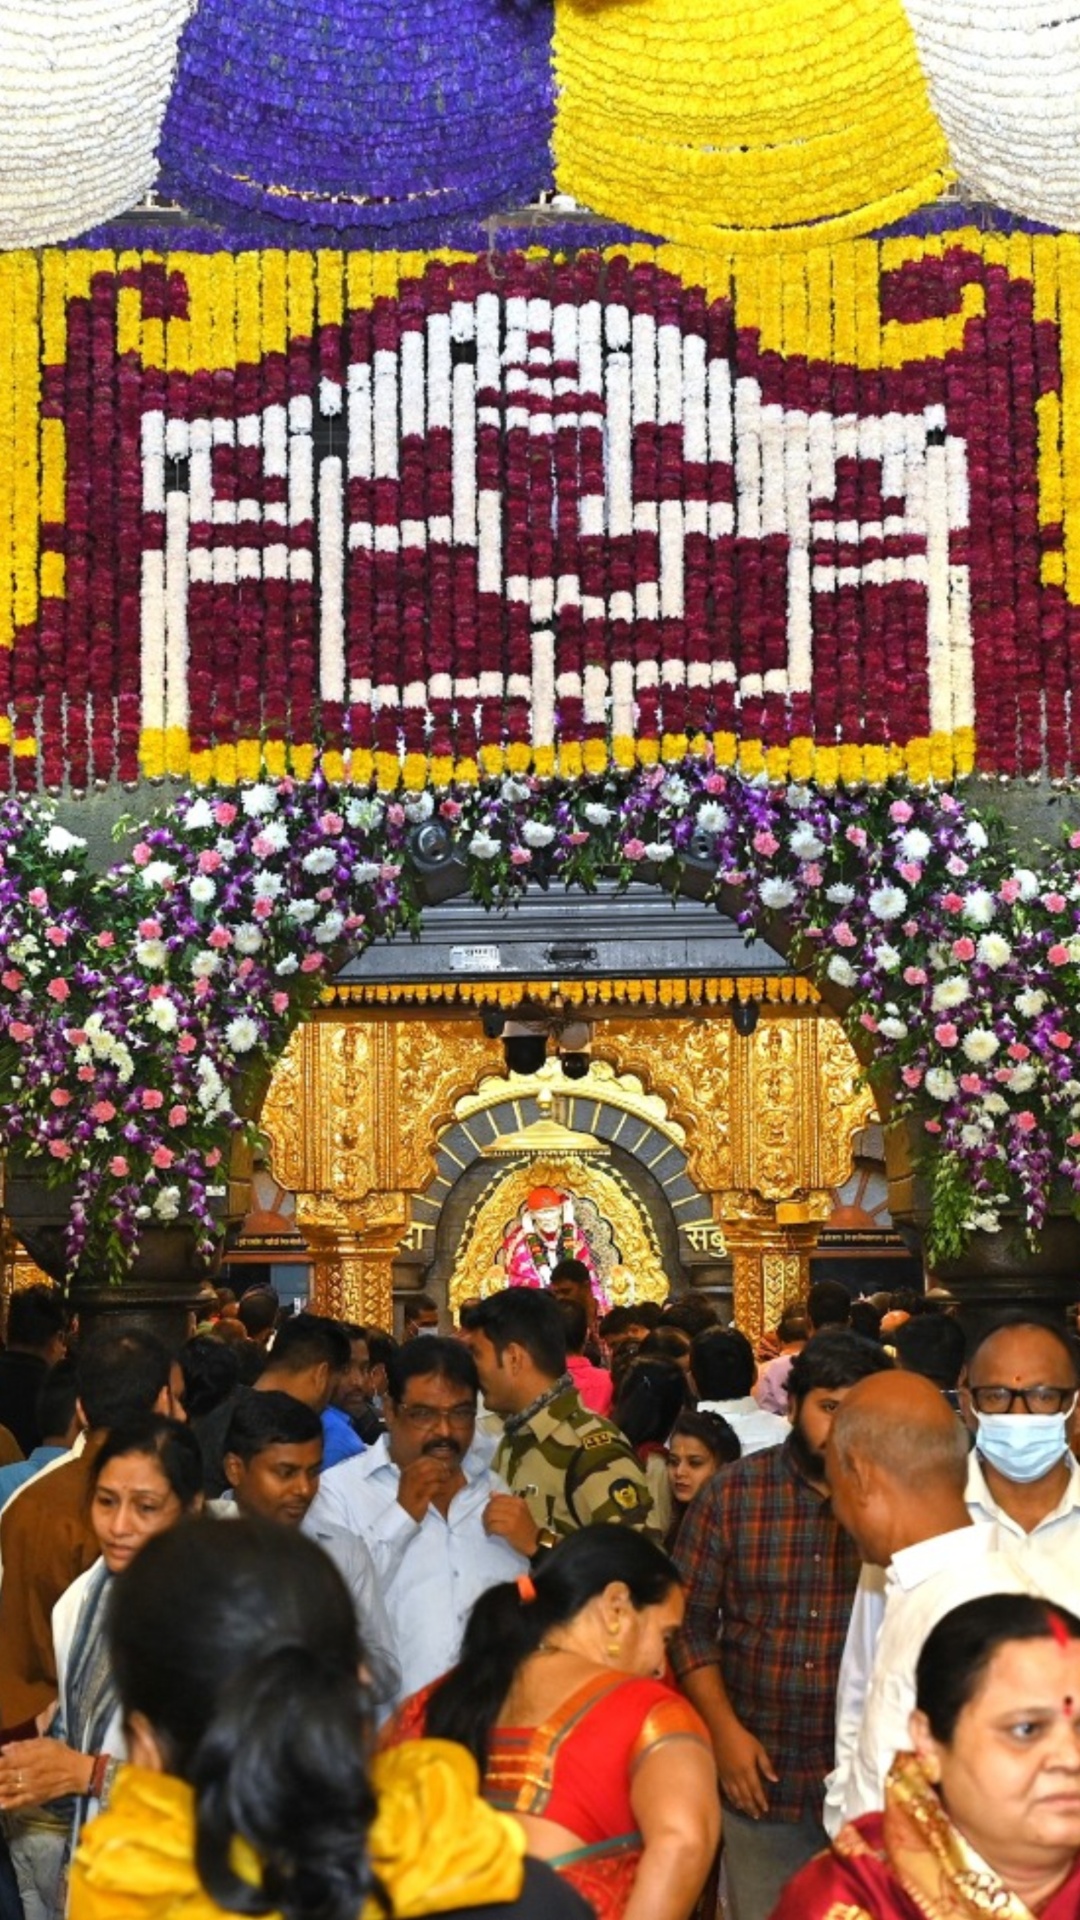 नए साल के दिन महाराष्ट्र के इस मंदिर में उमड़ा भक्तों का सैलाब, देखें तस्वीरें